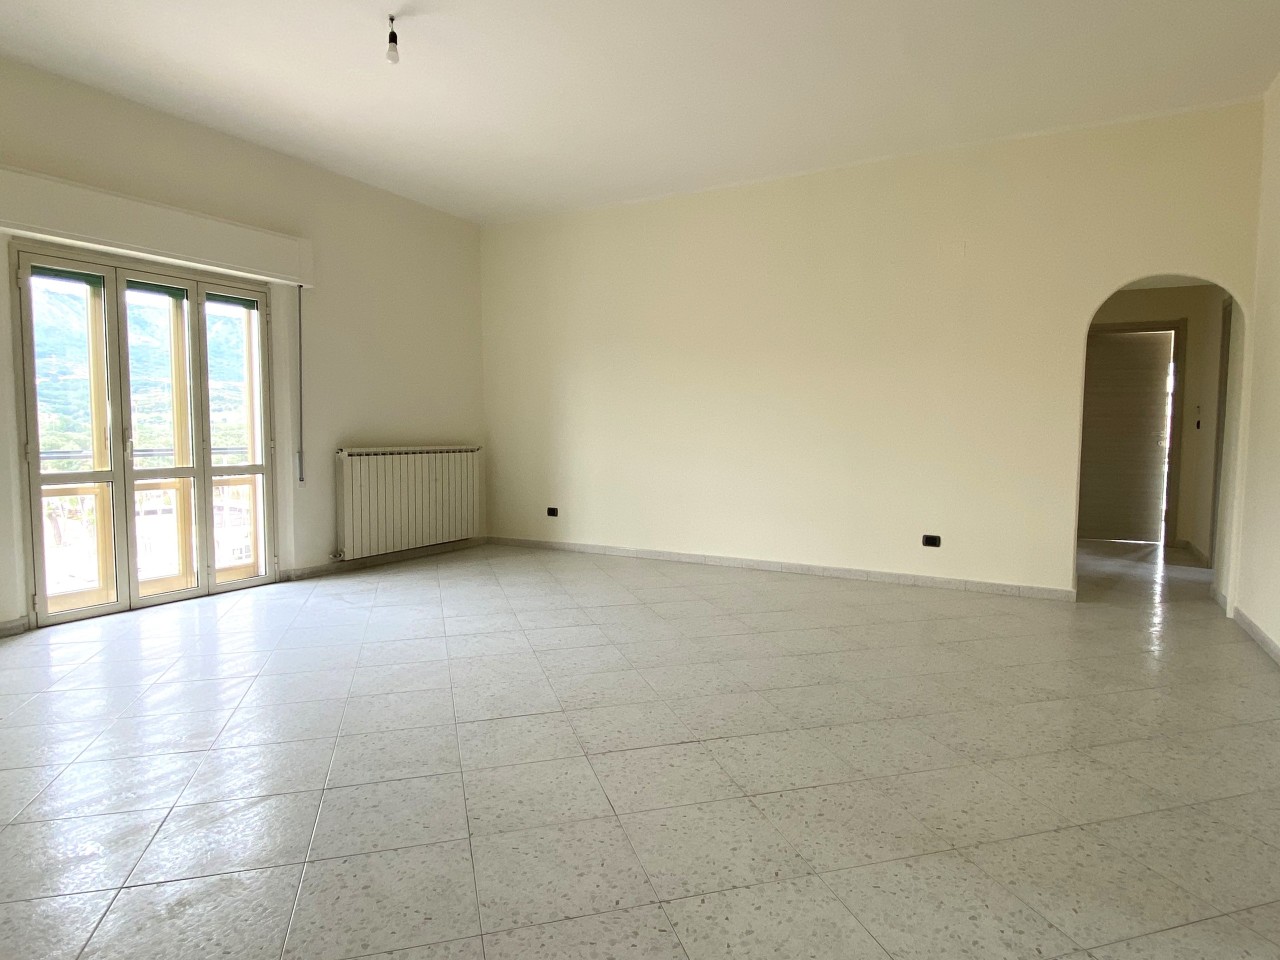 Appartamento in vendita a Squillace, 4 locali, prezzo € 99.000 | PortaleAgenzieImmobiliari.it